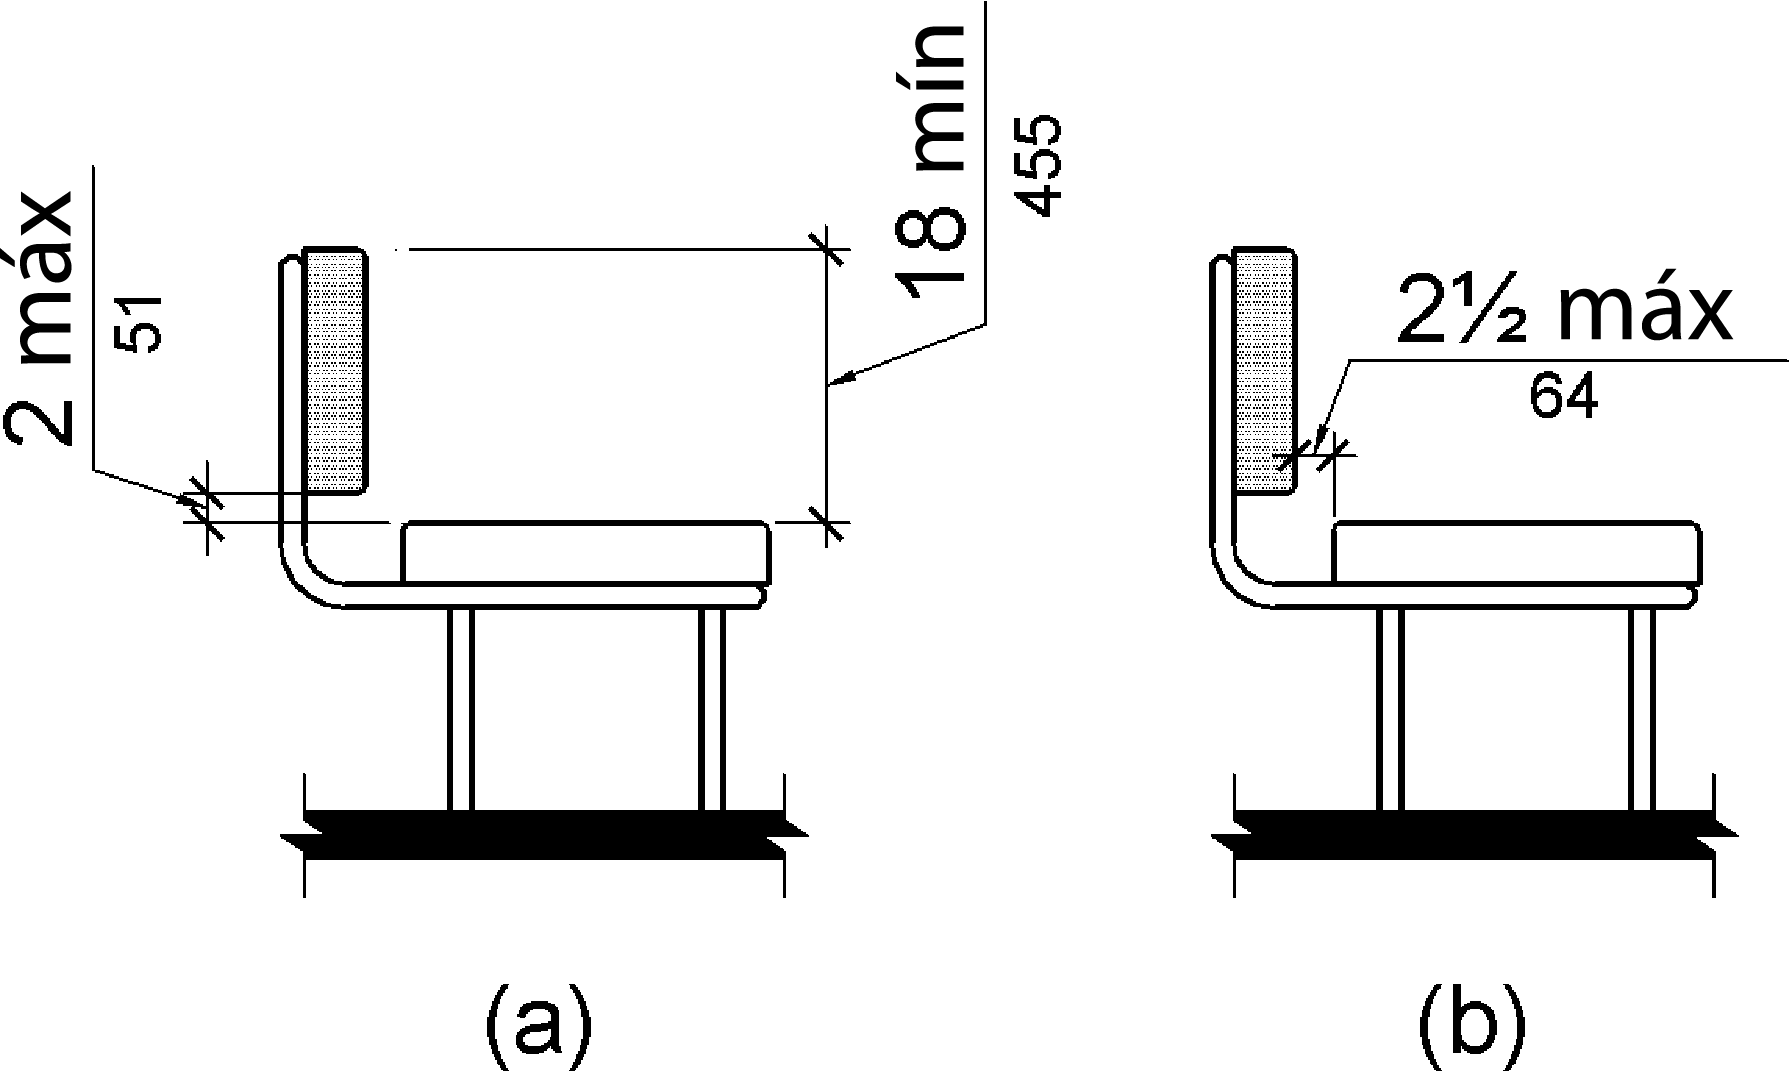 La figura (a) es un dibujo de elevación de un banco con respaldo.  El borde inferior del respaldo es de 2 pulgadas (51 mm) como máximo por encima de la superficie del asiento y el borde superior del respaldo está a 18 pulgadas (455 mm) por encima de la superficie del asiento.  La figura (b) muestra la distancia entre el borde trasero del asiento y la cara delantera del soporte trasero como máximo 2 pulgadas (64 mm).